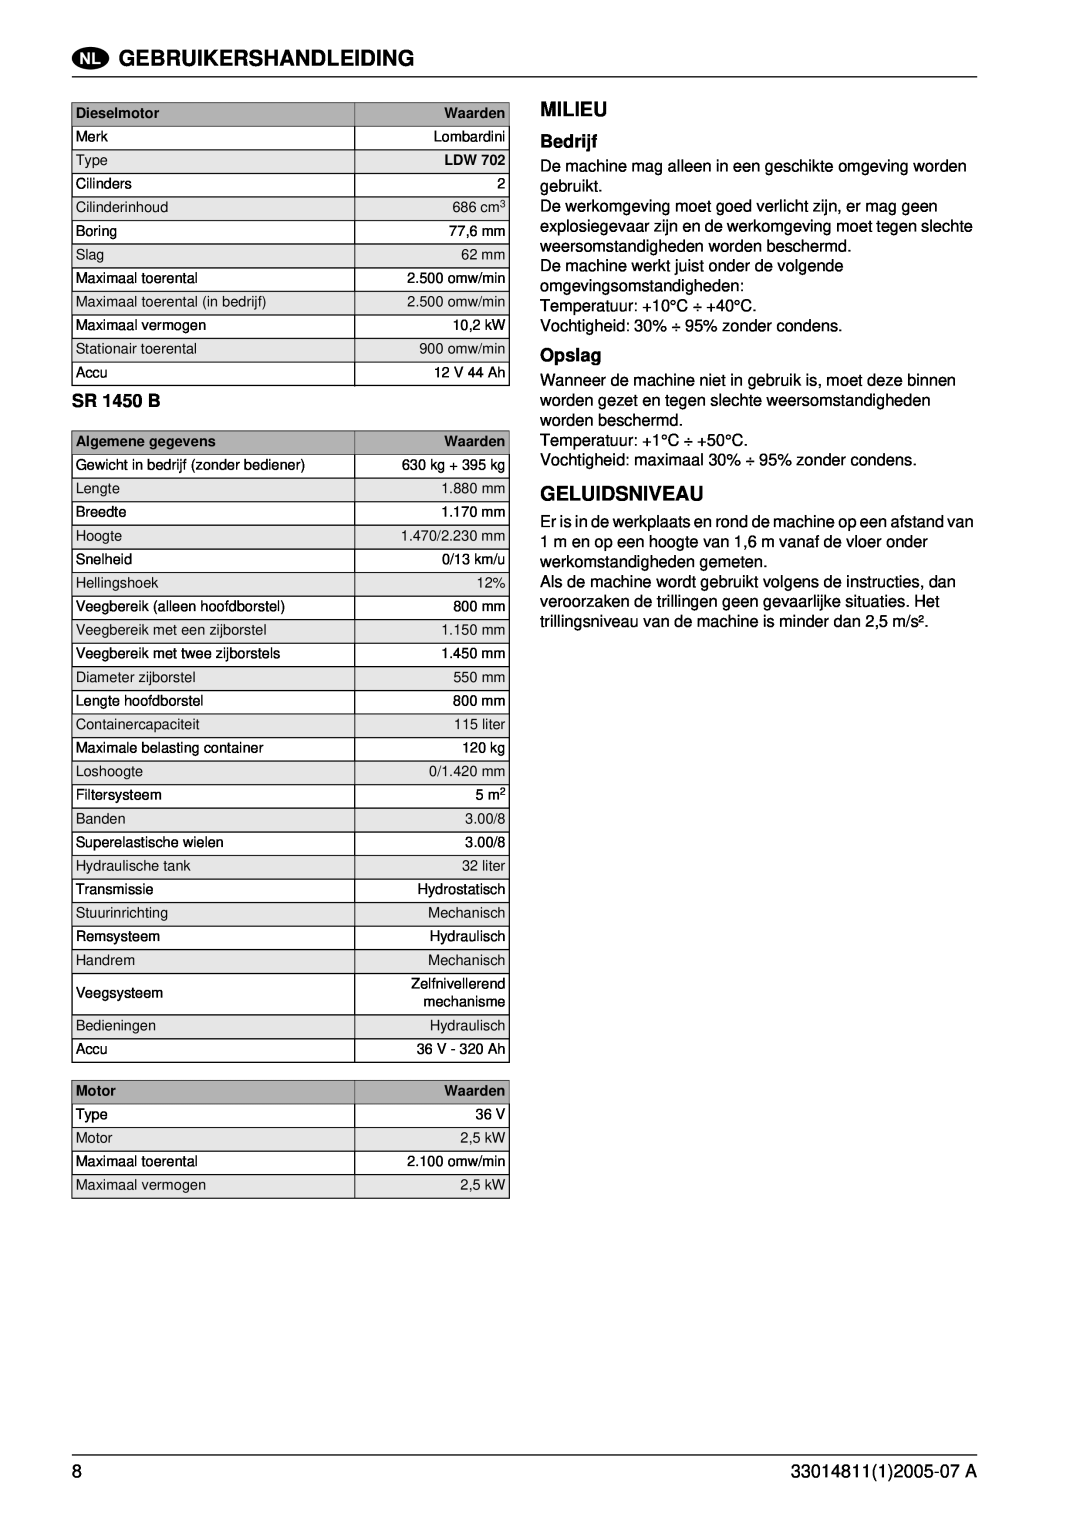 Nilfisk-ALTO SR 1450 B-D manuel dutilisation Milieu, Geluidsniveau, Bedrijf, Opslag, Gebruikershandleiding 